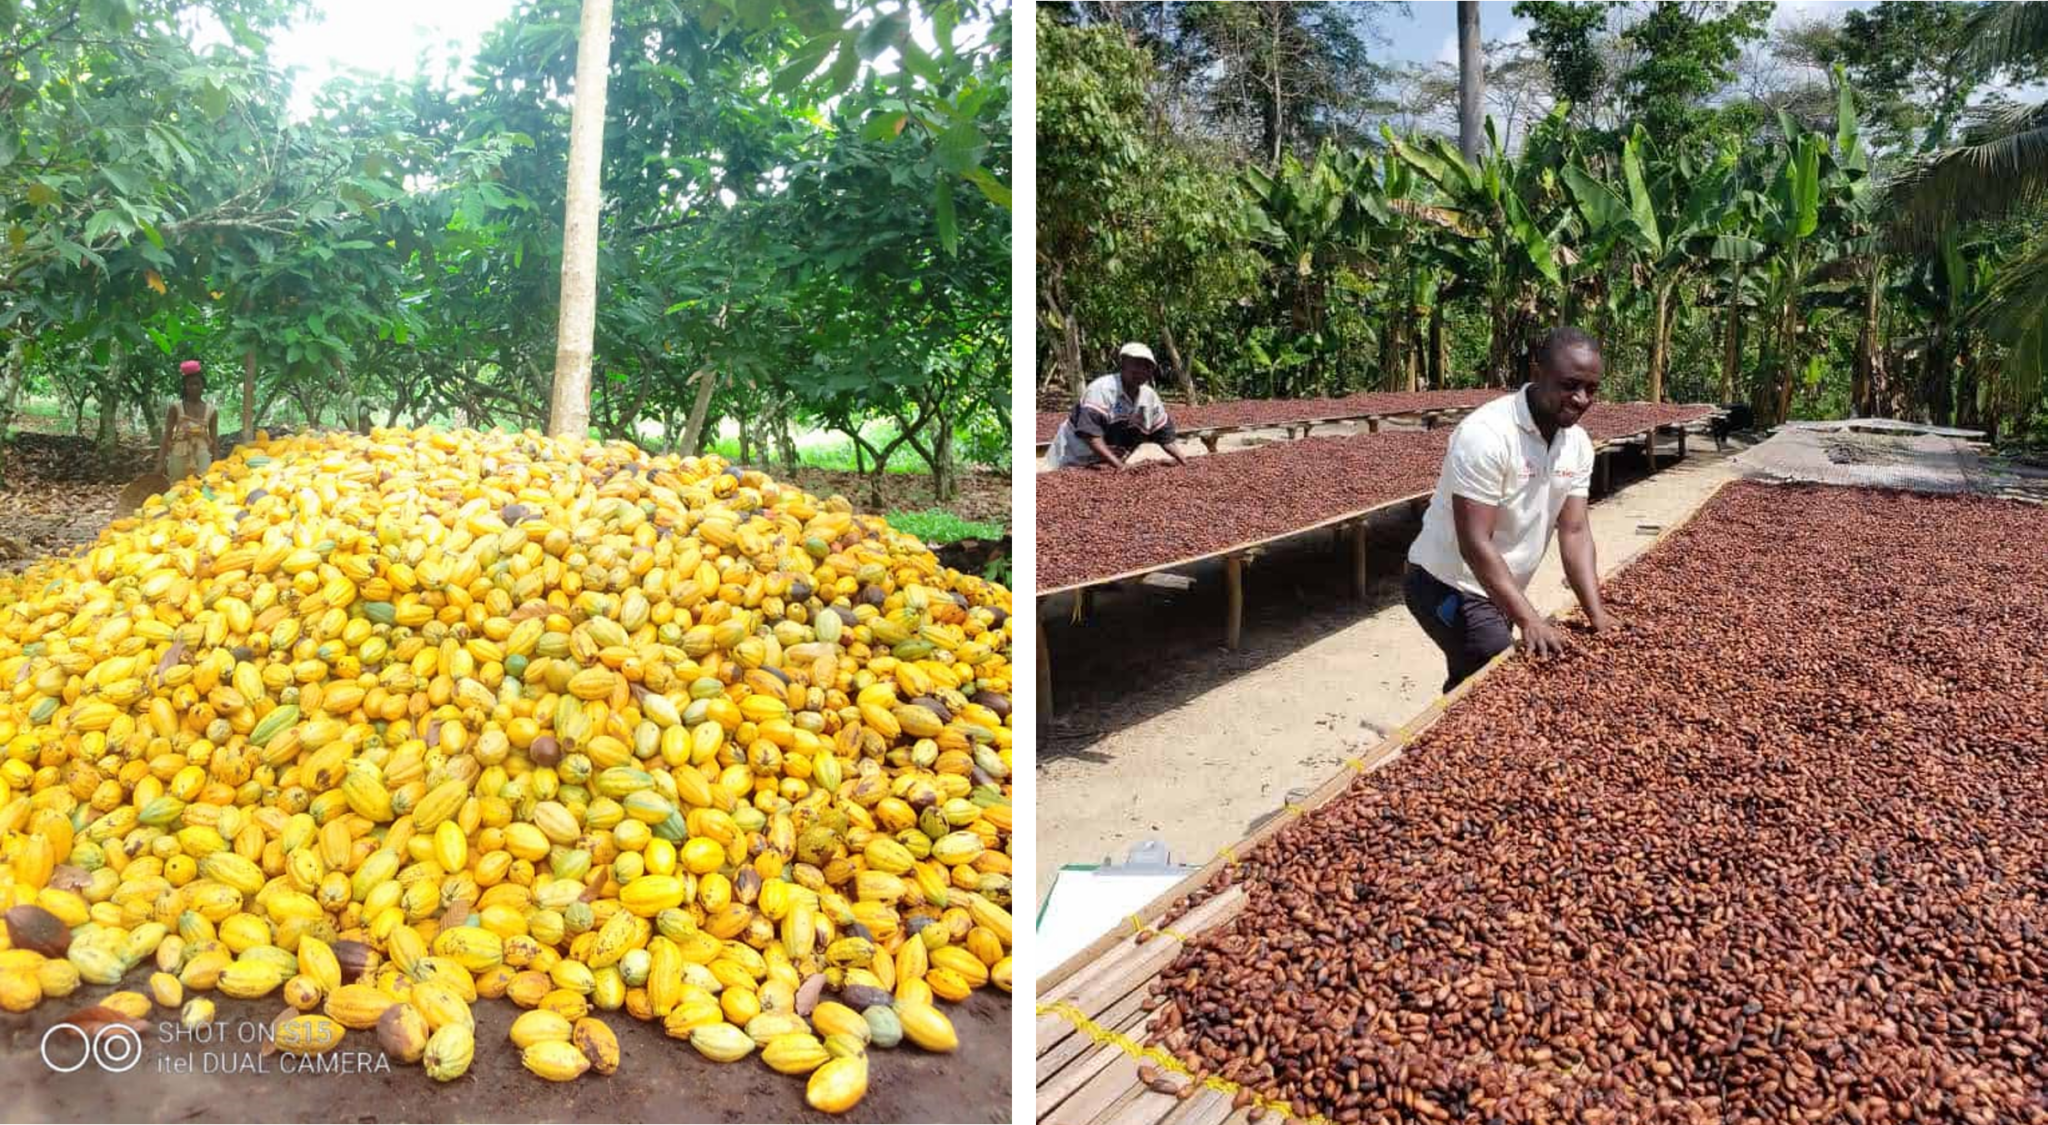 Rendement, récolte, manipulation et stockage du cacao